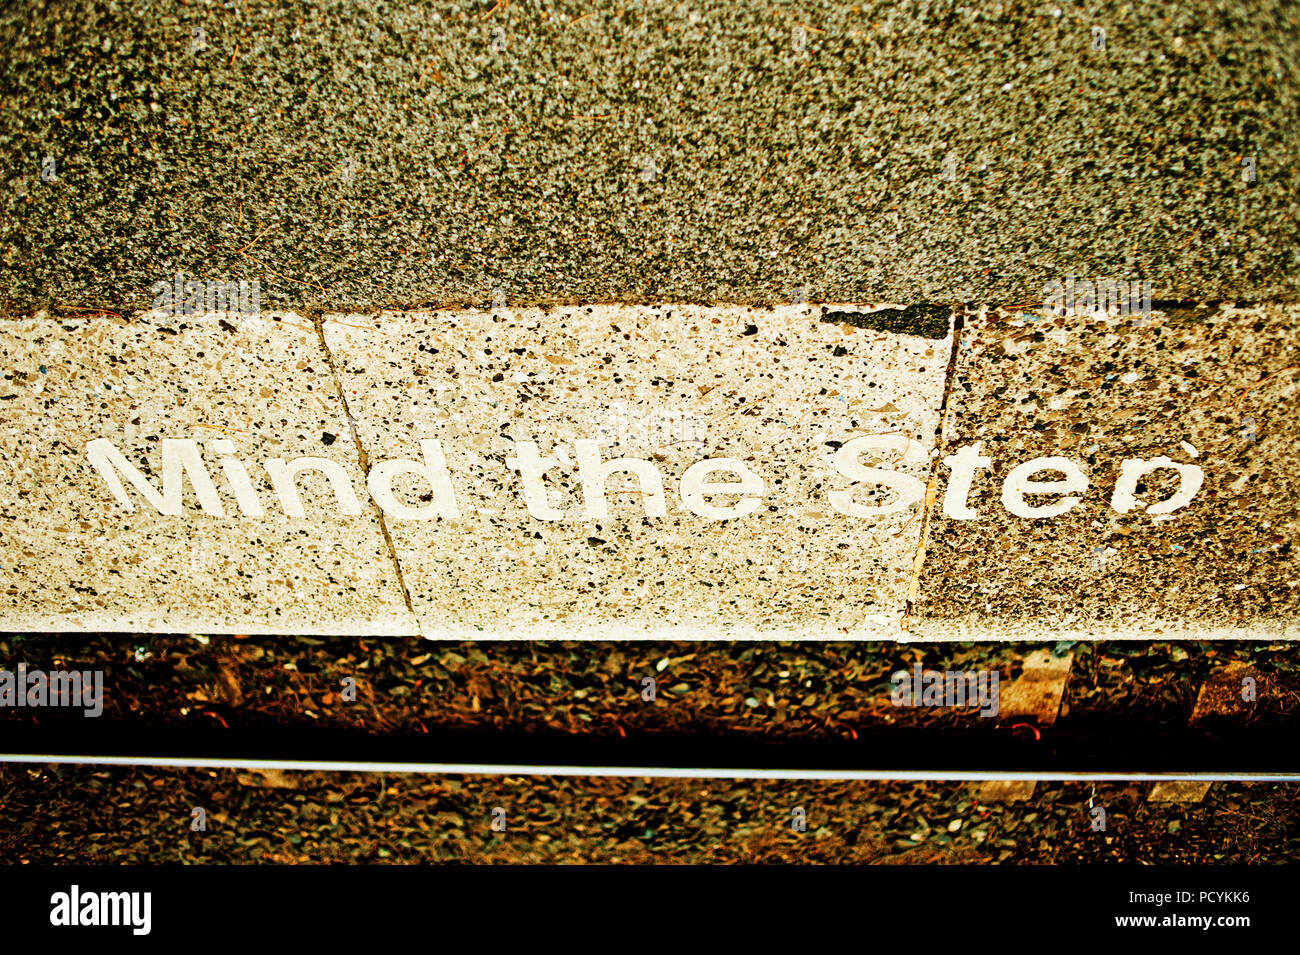 L'esprit l'étape, le bord de la plate-forme signe, Battersby, North Yorkshire, Angleterre Banque D'Images